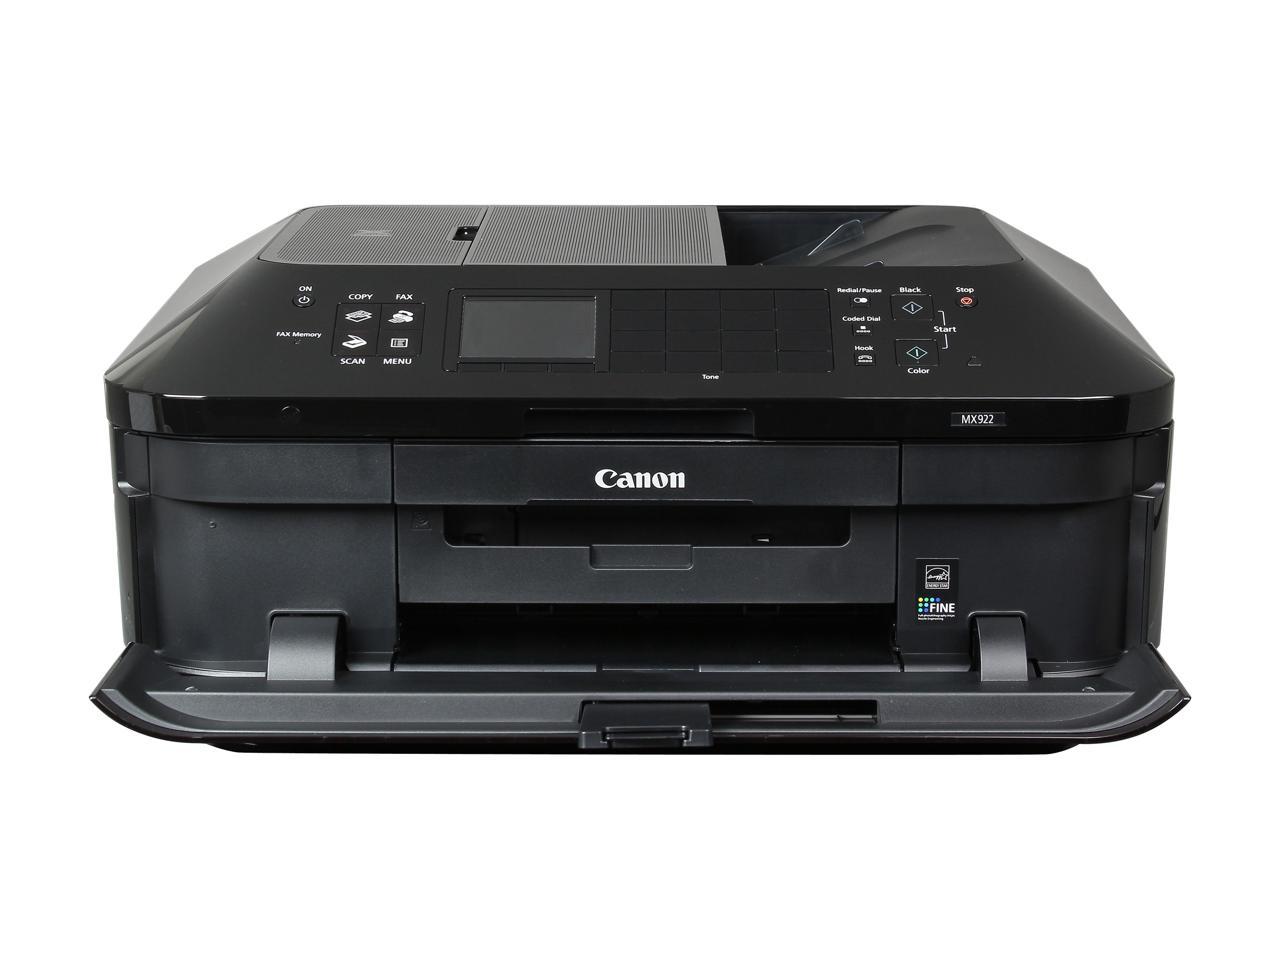 canon pixam mx922 printer offline